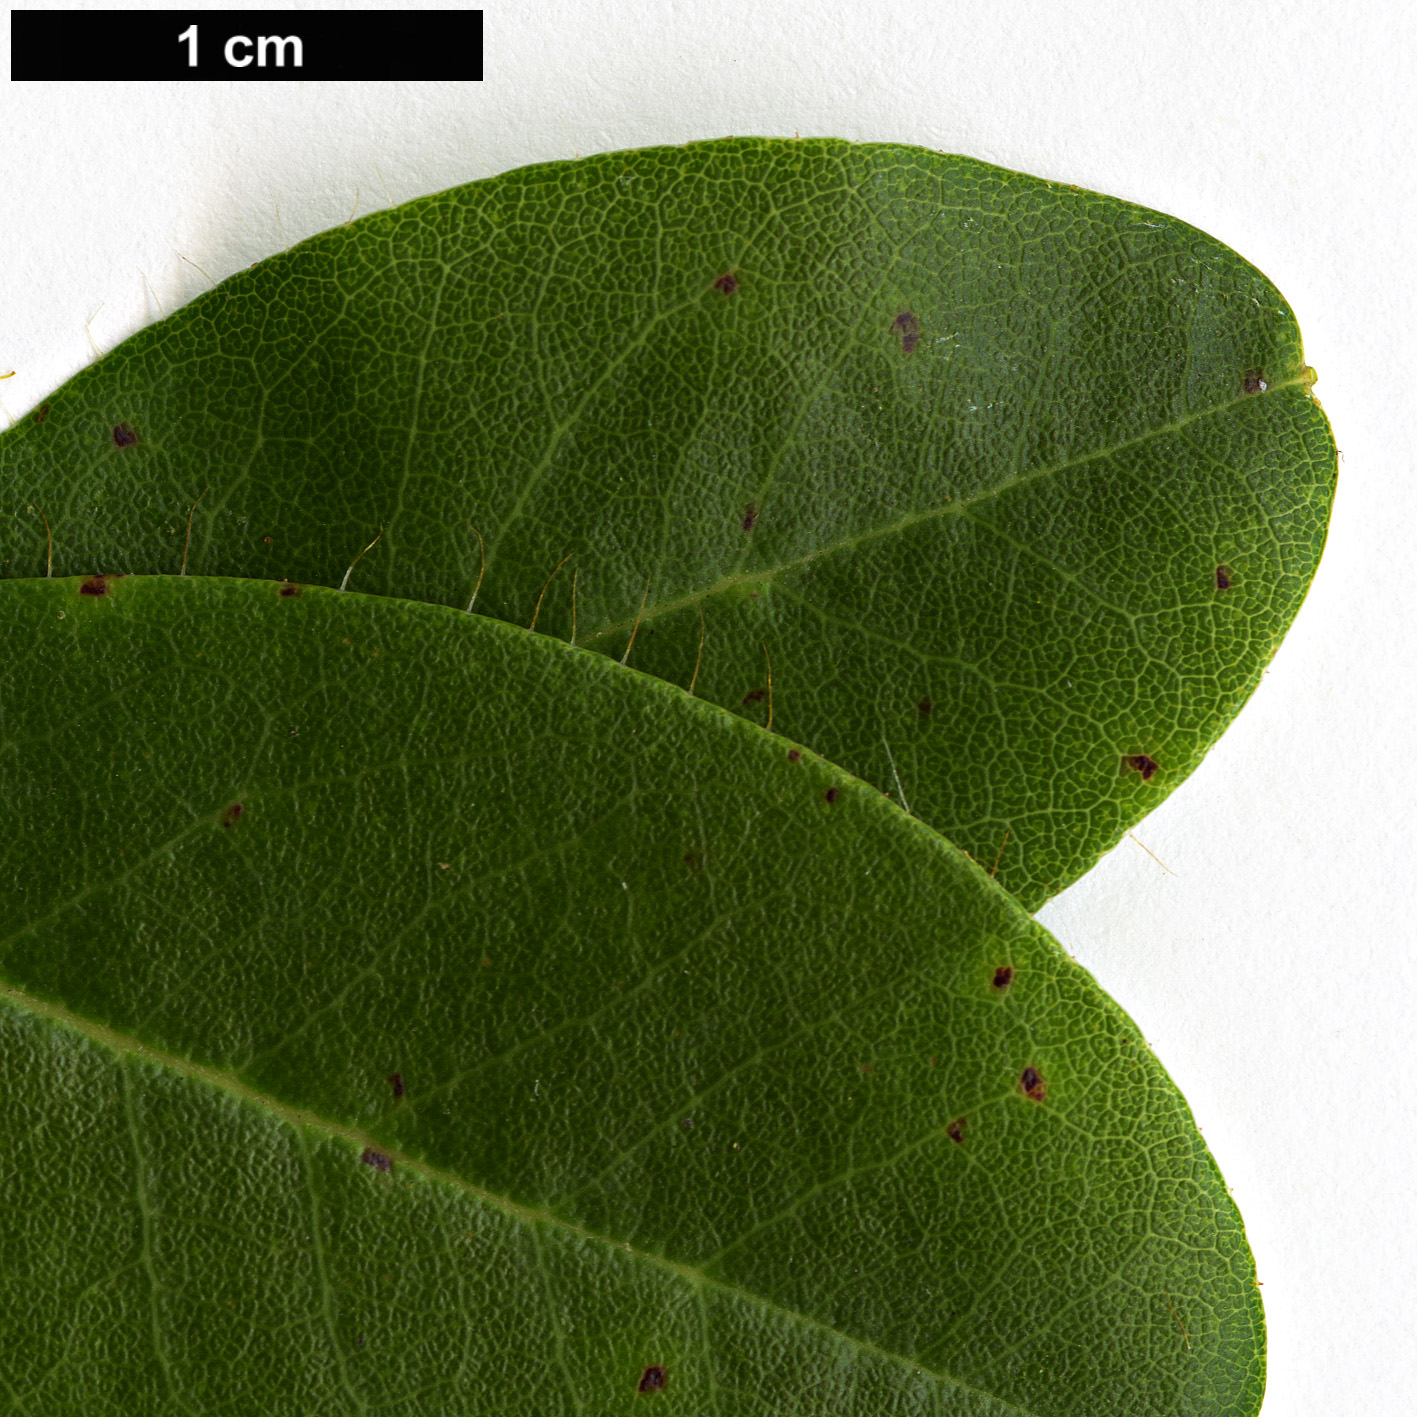 High resolution image: Family: Ericaceae - Genus: Rhododendron - Taxon: mekongense - SpeciesSub: var. mekongense